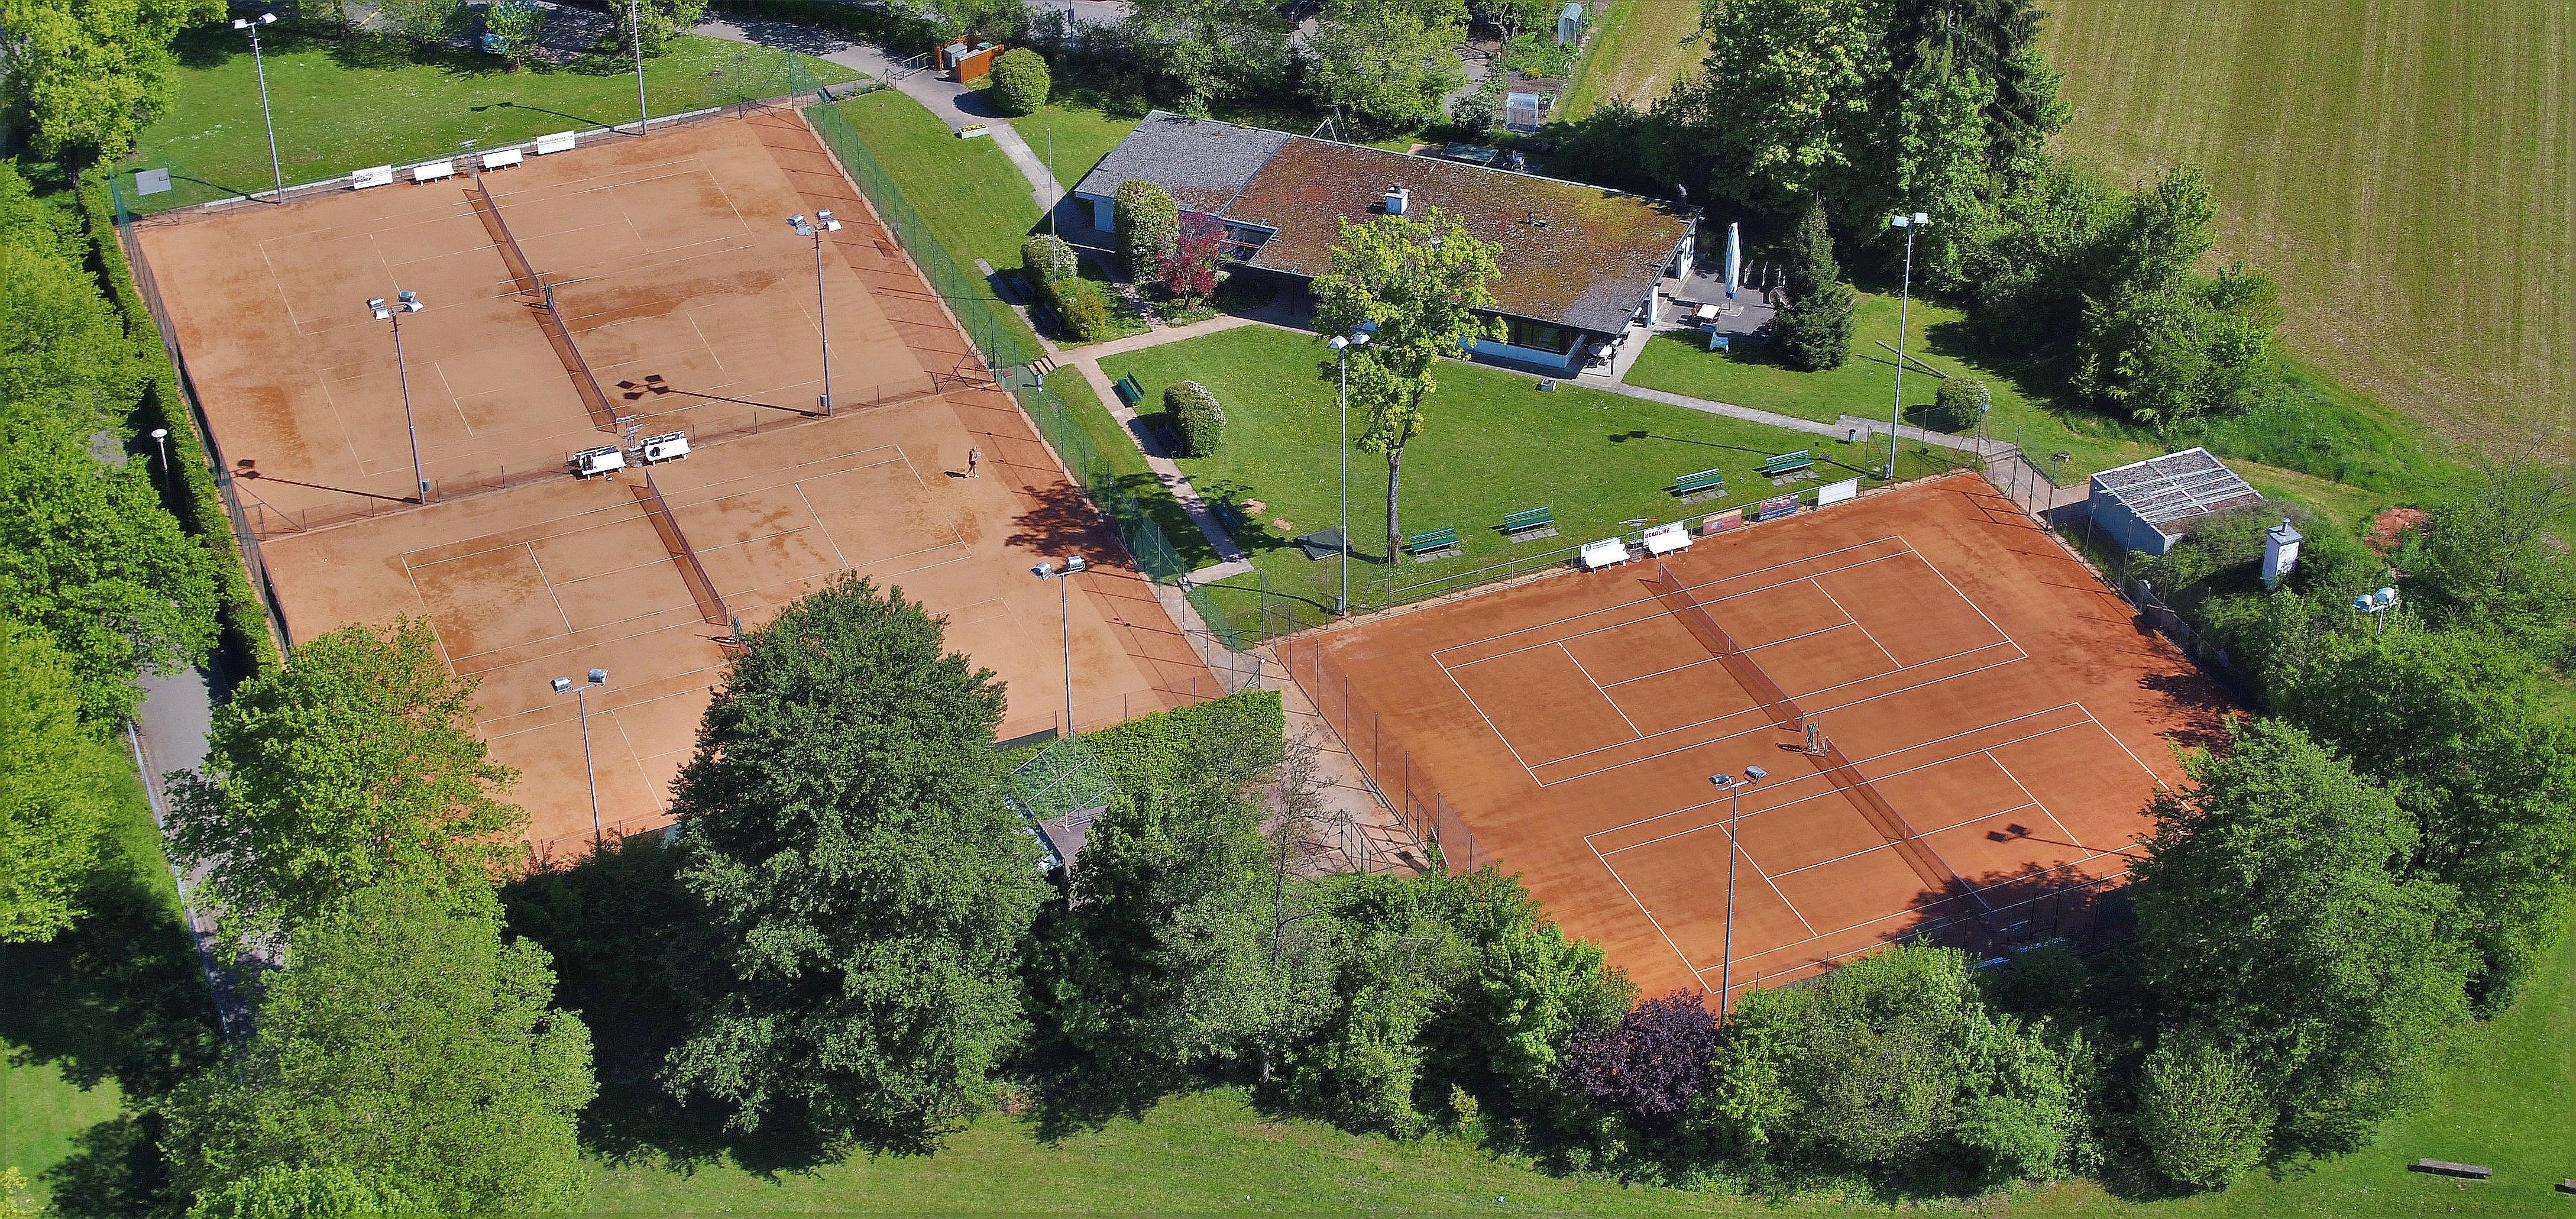 (c) Tennisclub-dietikon.ch